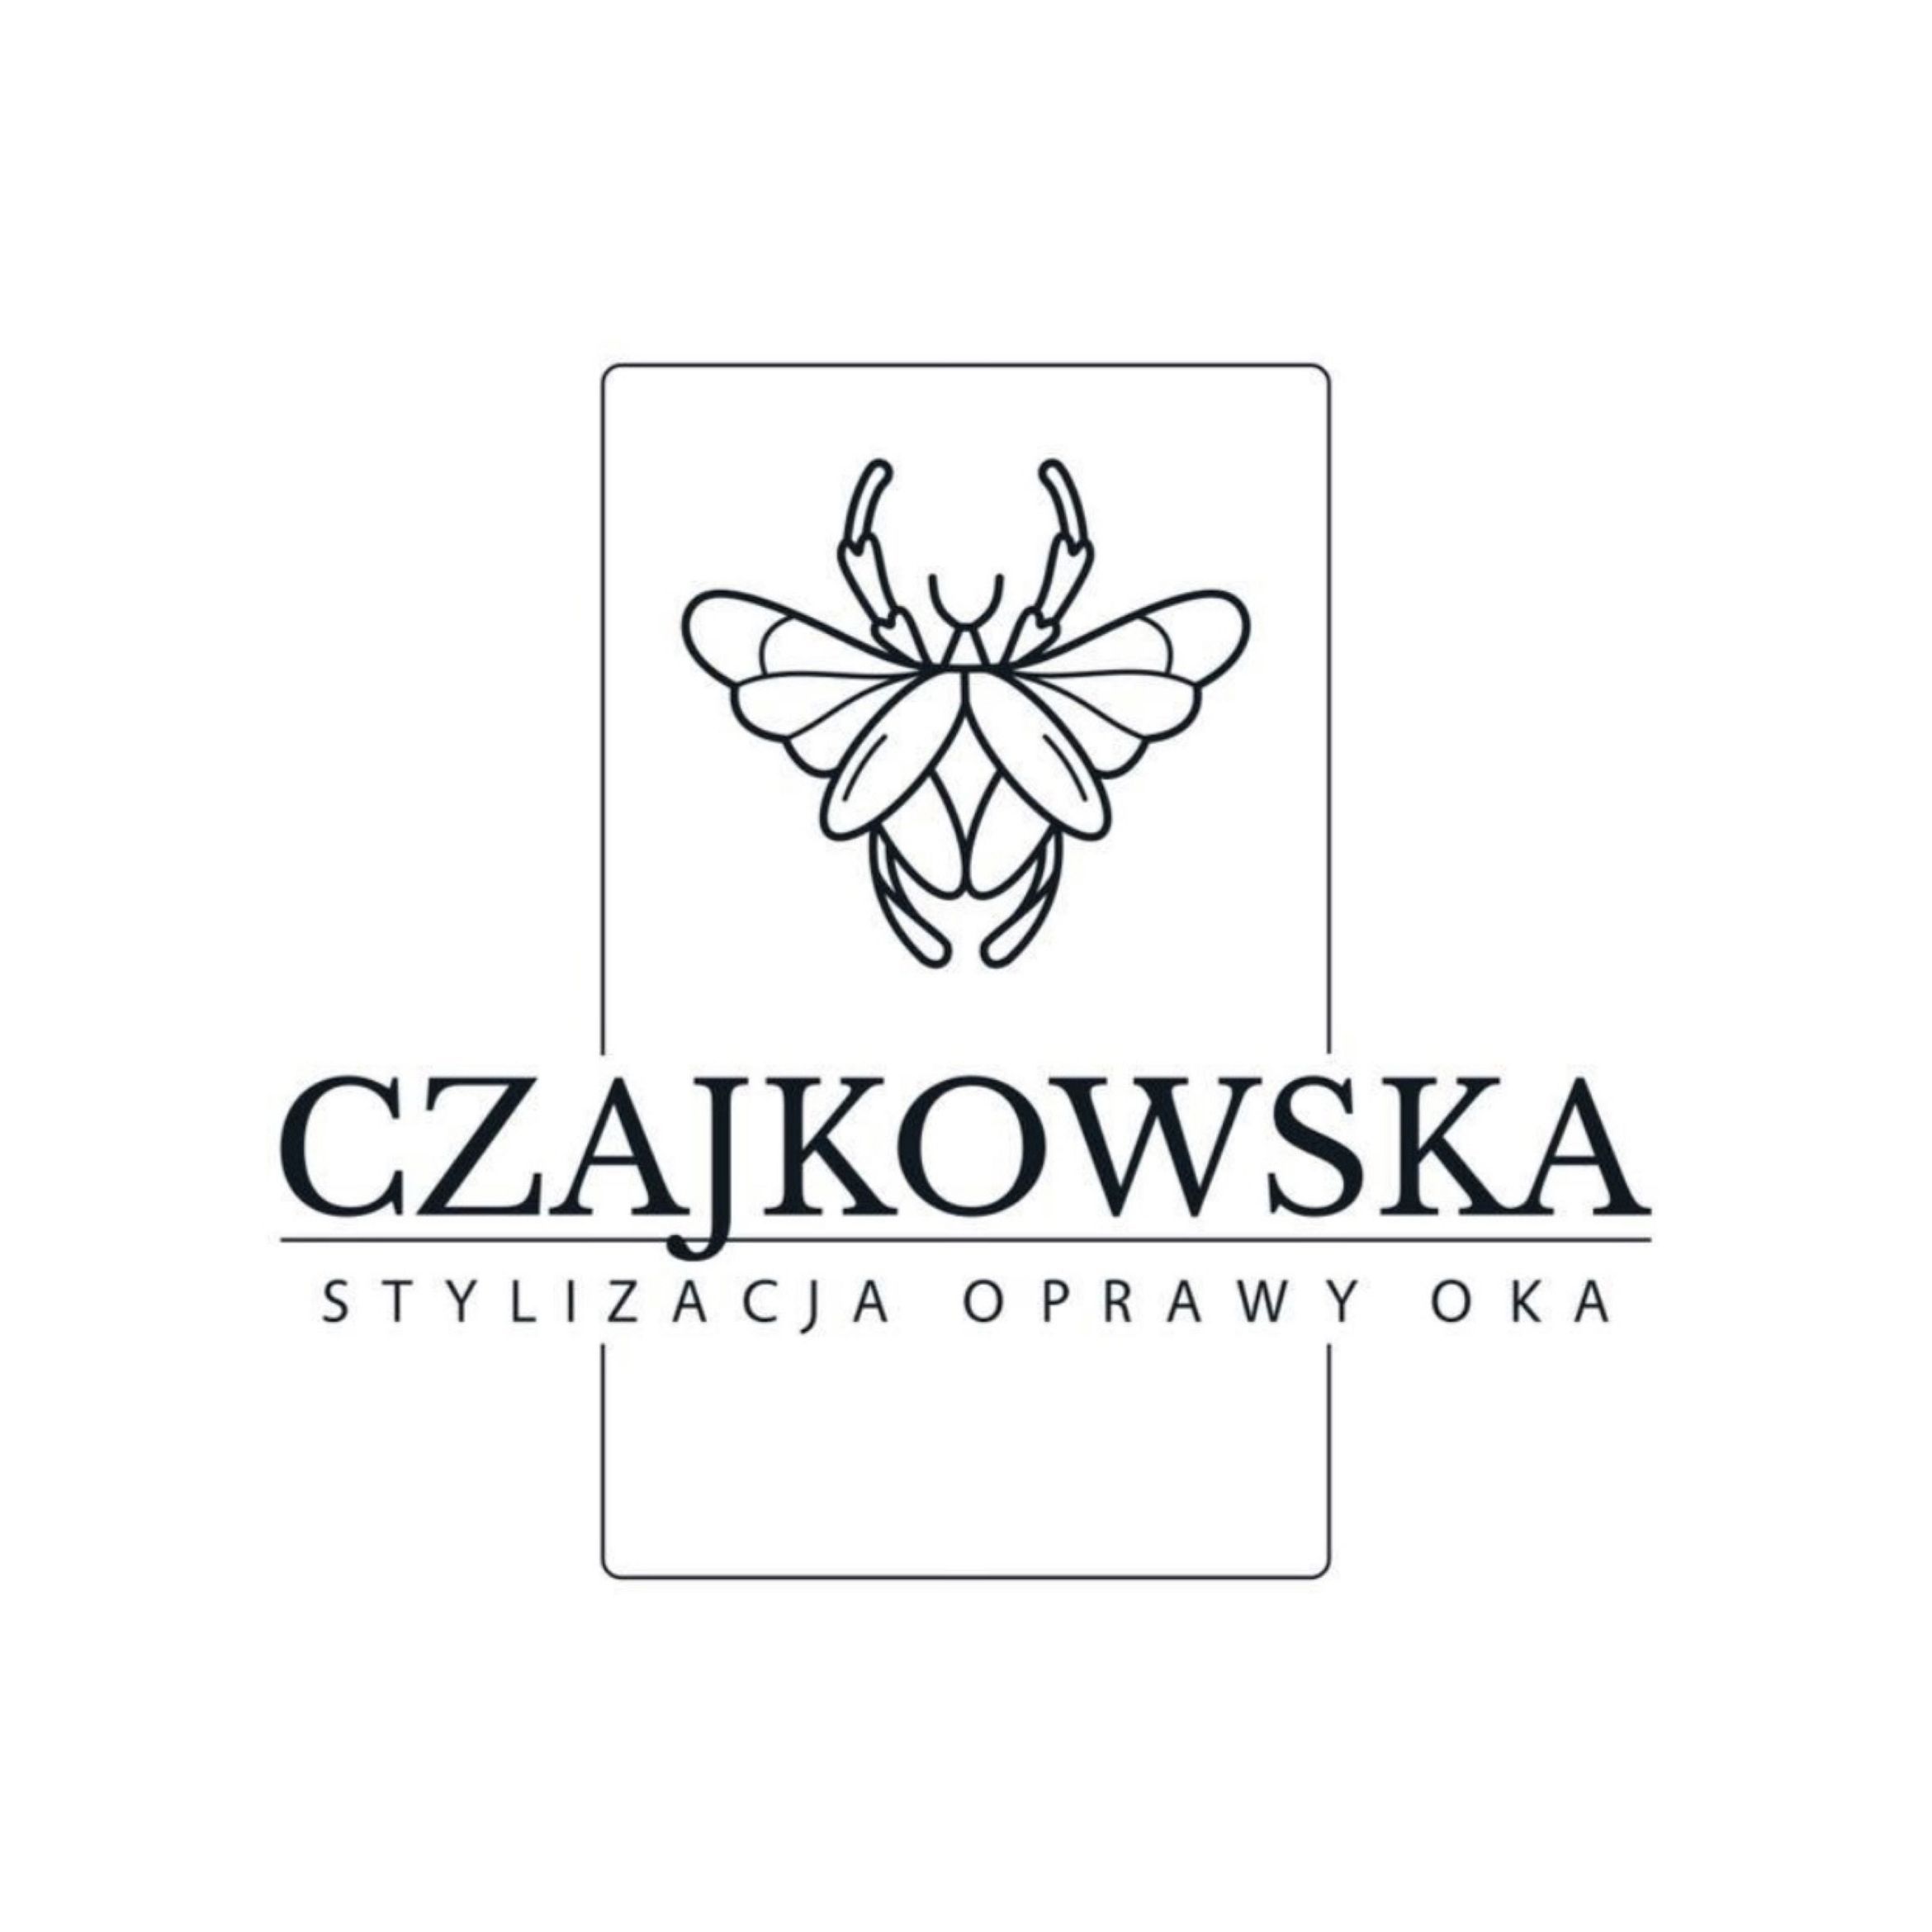 Stylizacja Oprawy Oka - Dominika Czajkowska, Uphagena, 27/303, 80-237, Gdańsk